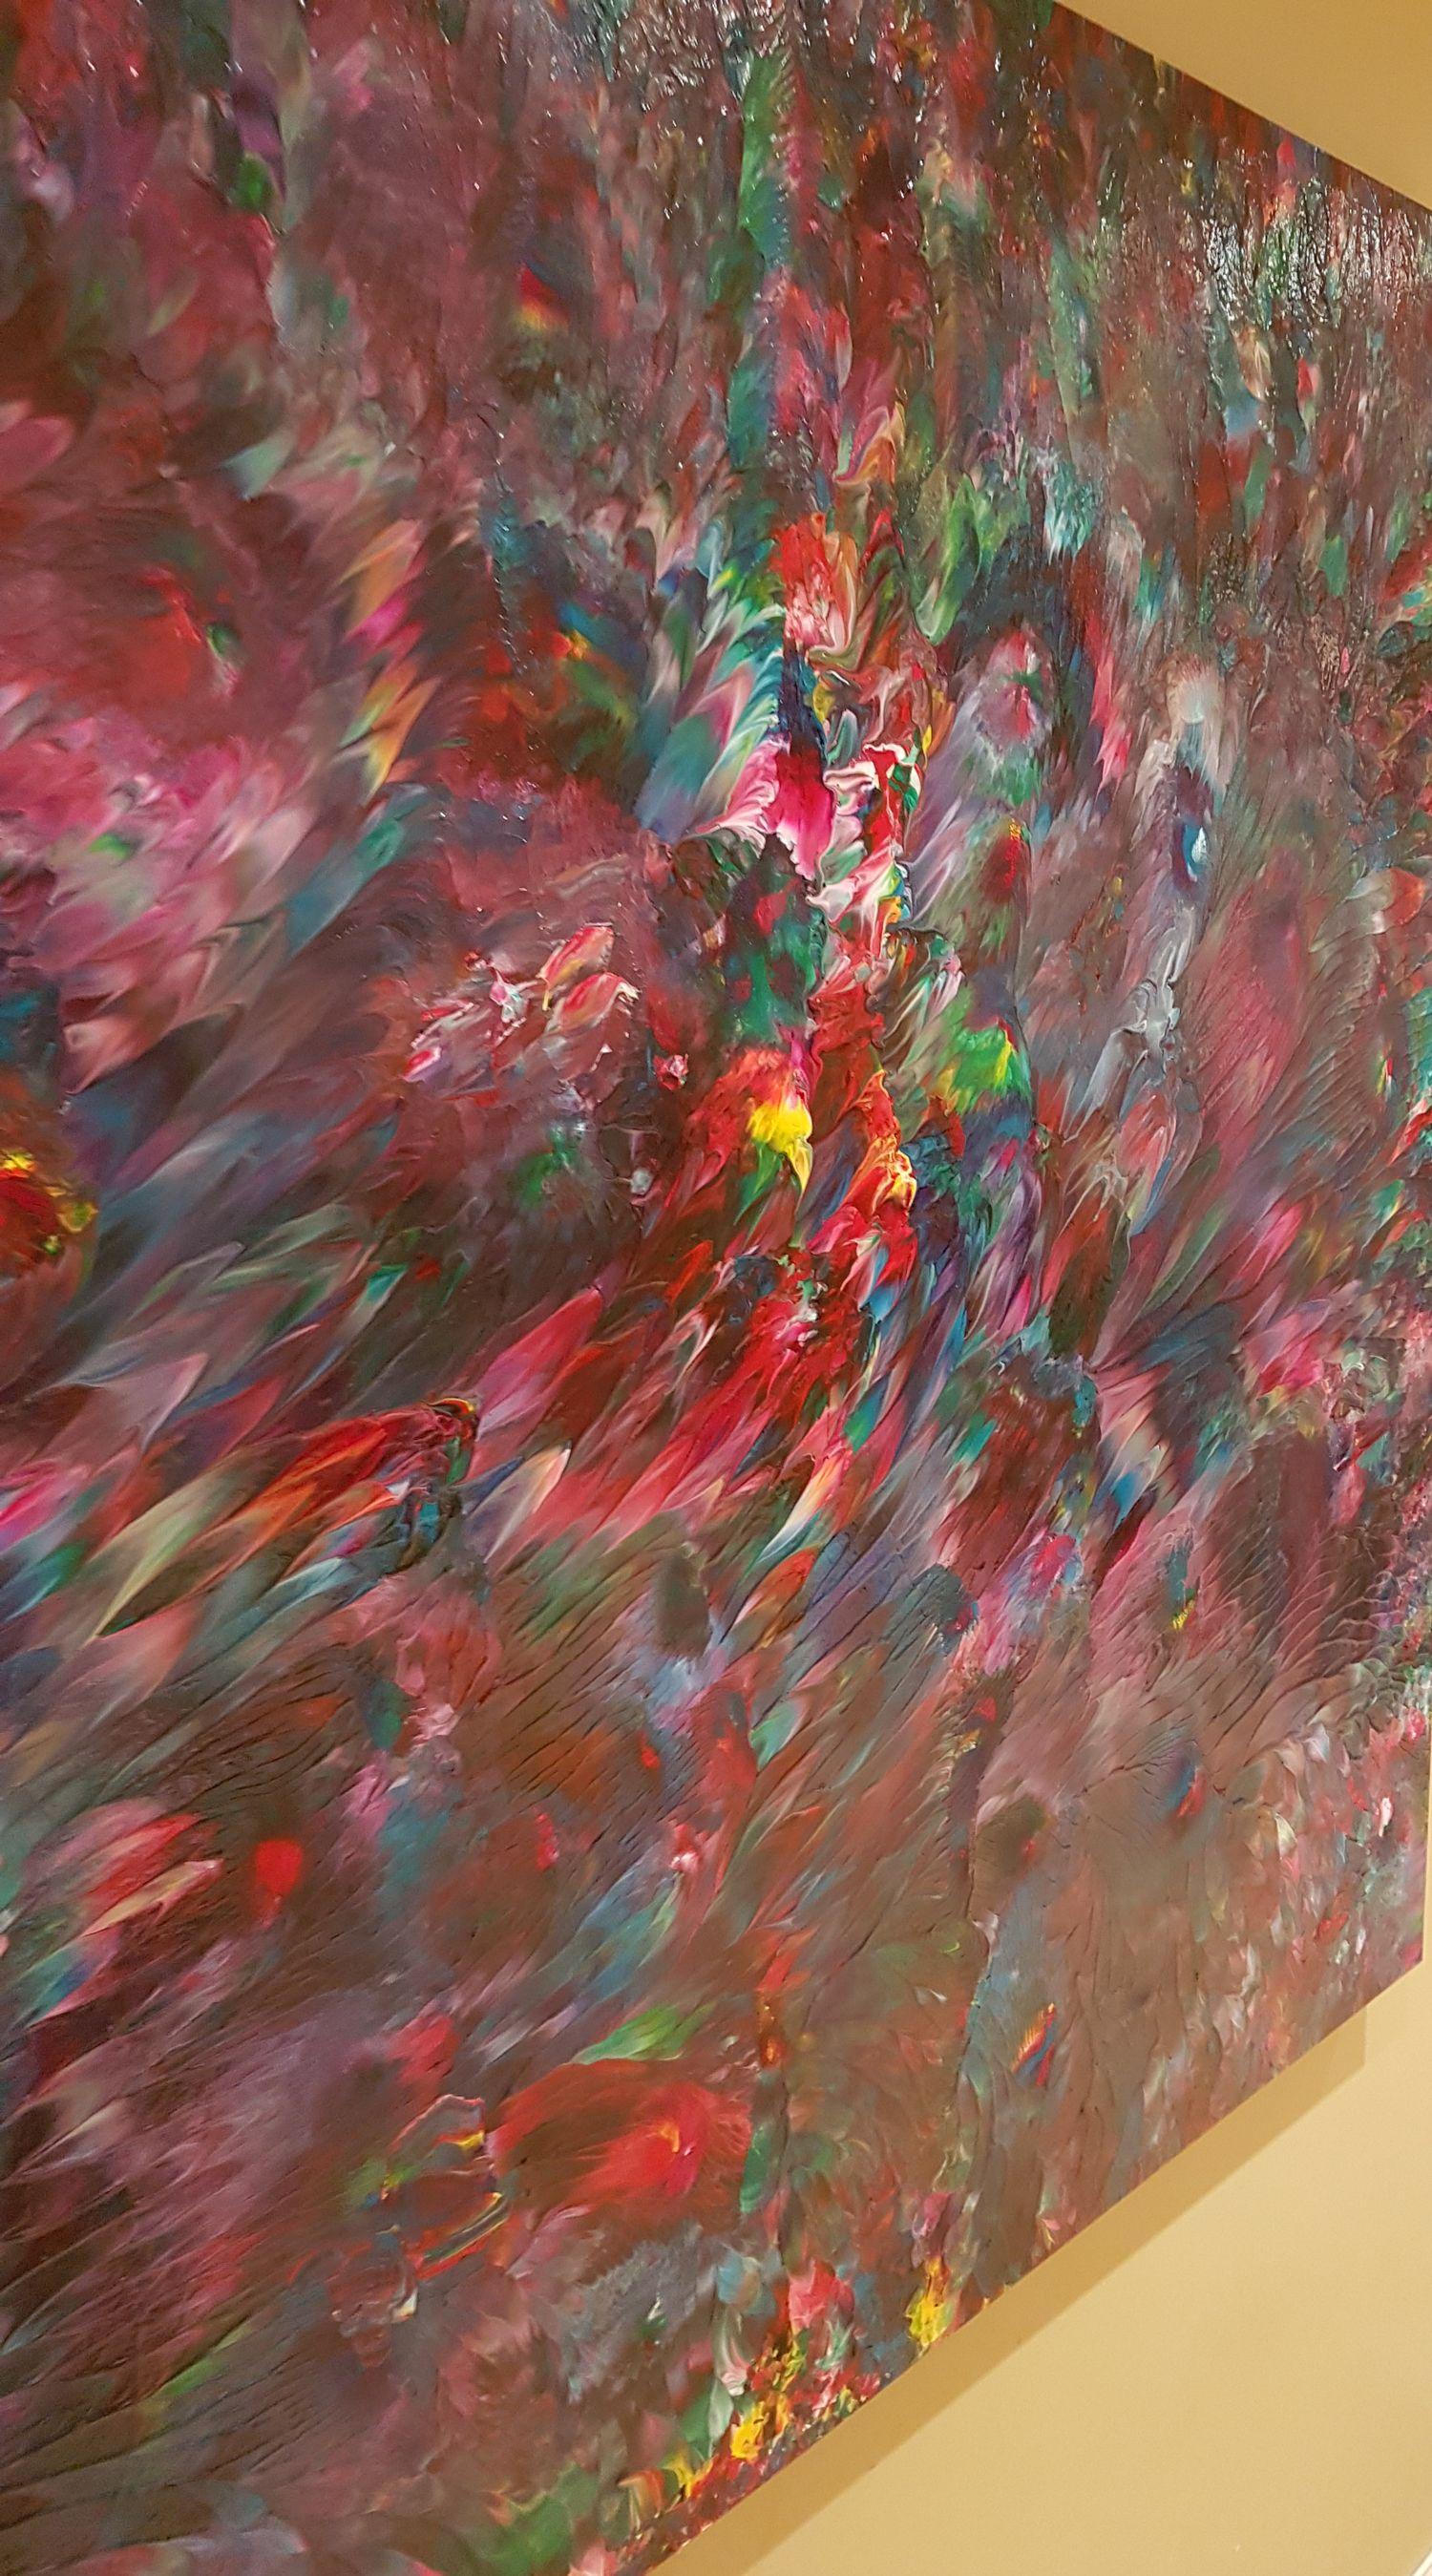 Dieses große, ausdrucksstarke abstrakte Gemälde ist eine wunderschöne Kombination aus satten rot-violetten und dunklen, tief violetten Farben. Dunkle Blautöne und leuchtende Akzentfarben, vor allem Rot, Rosa, Gelb und Grün, fließen mit interessanten